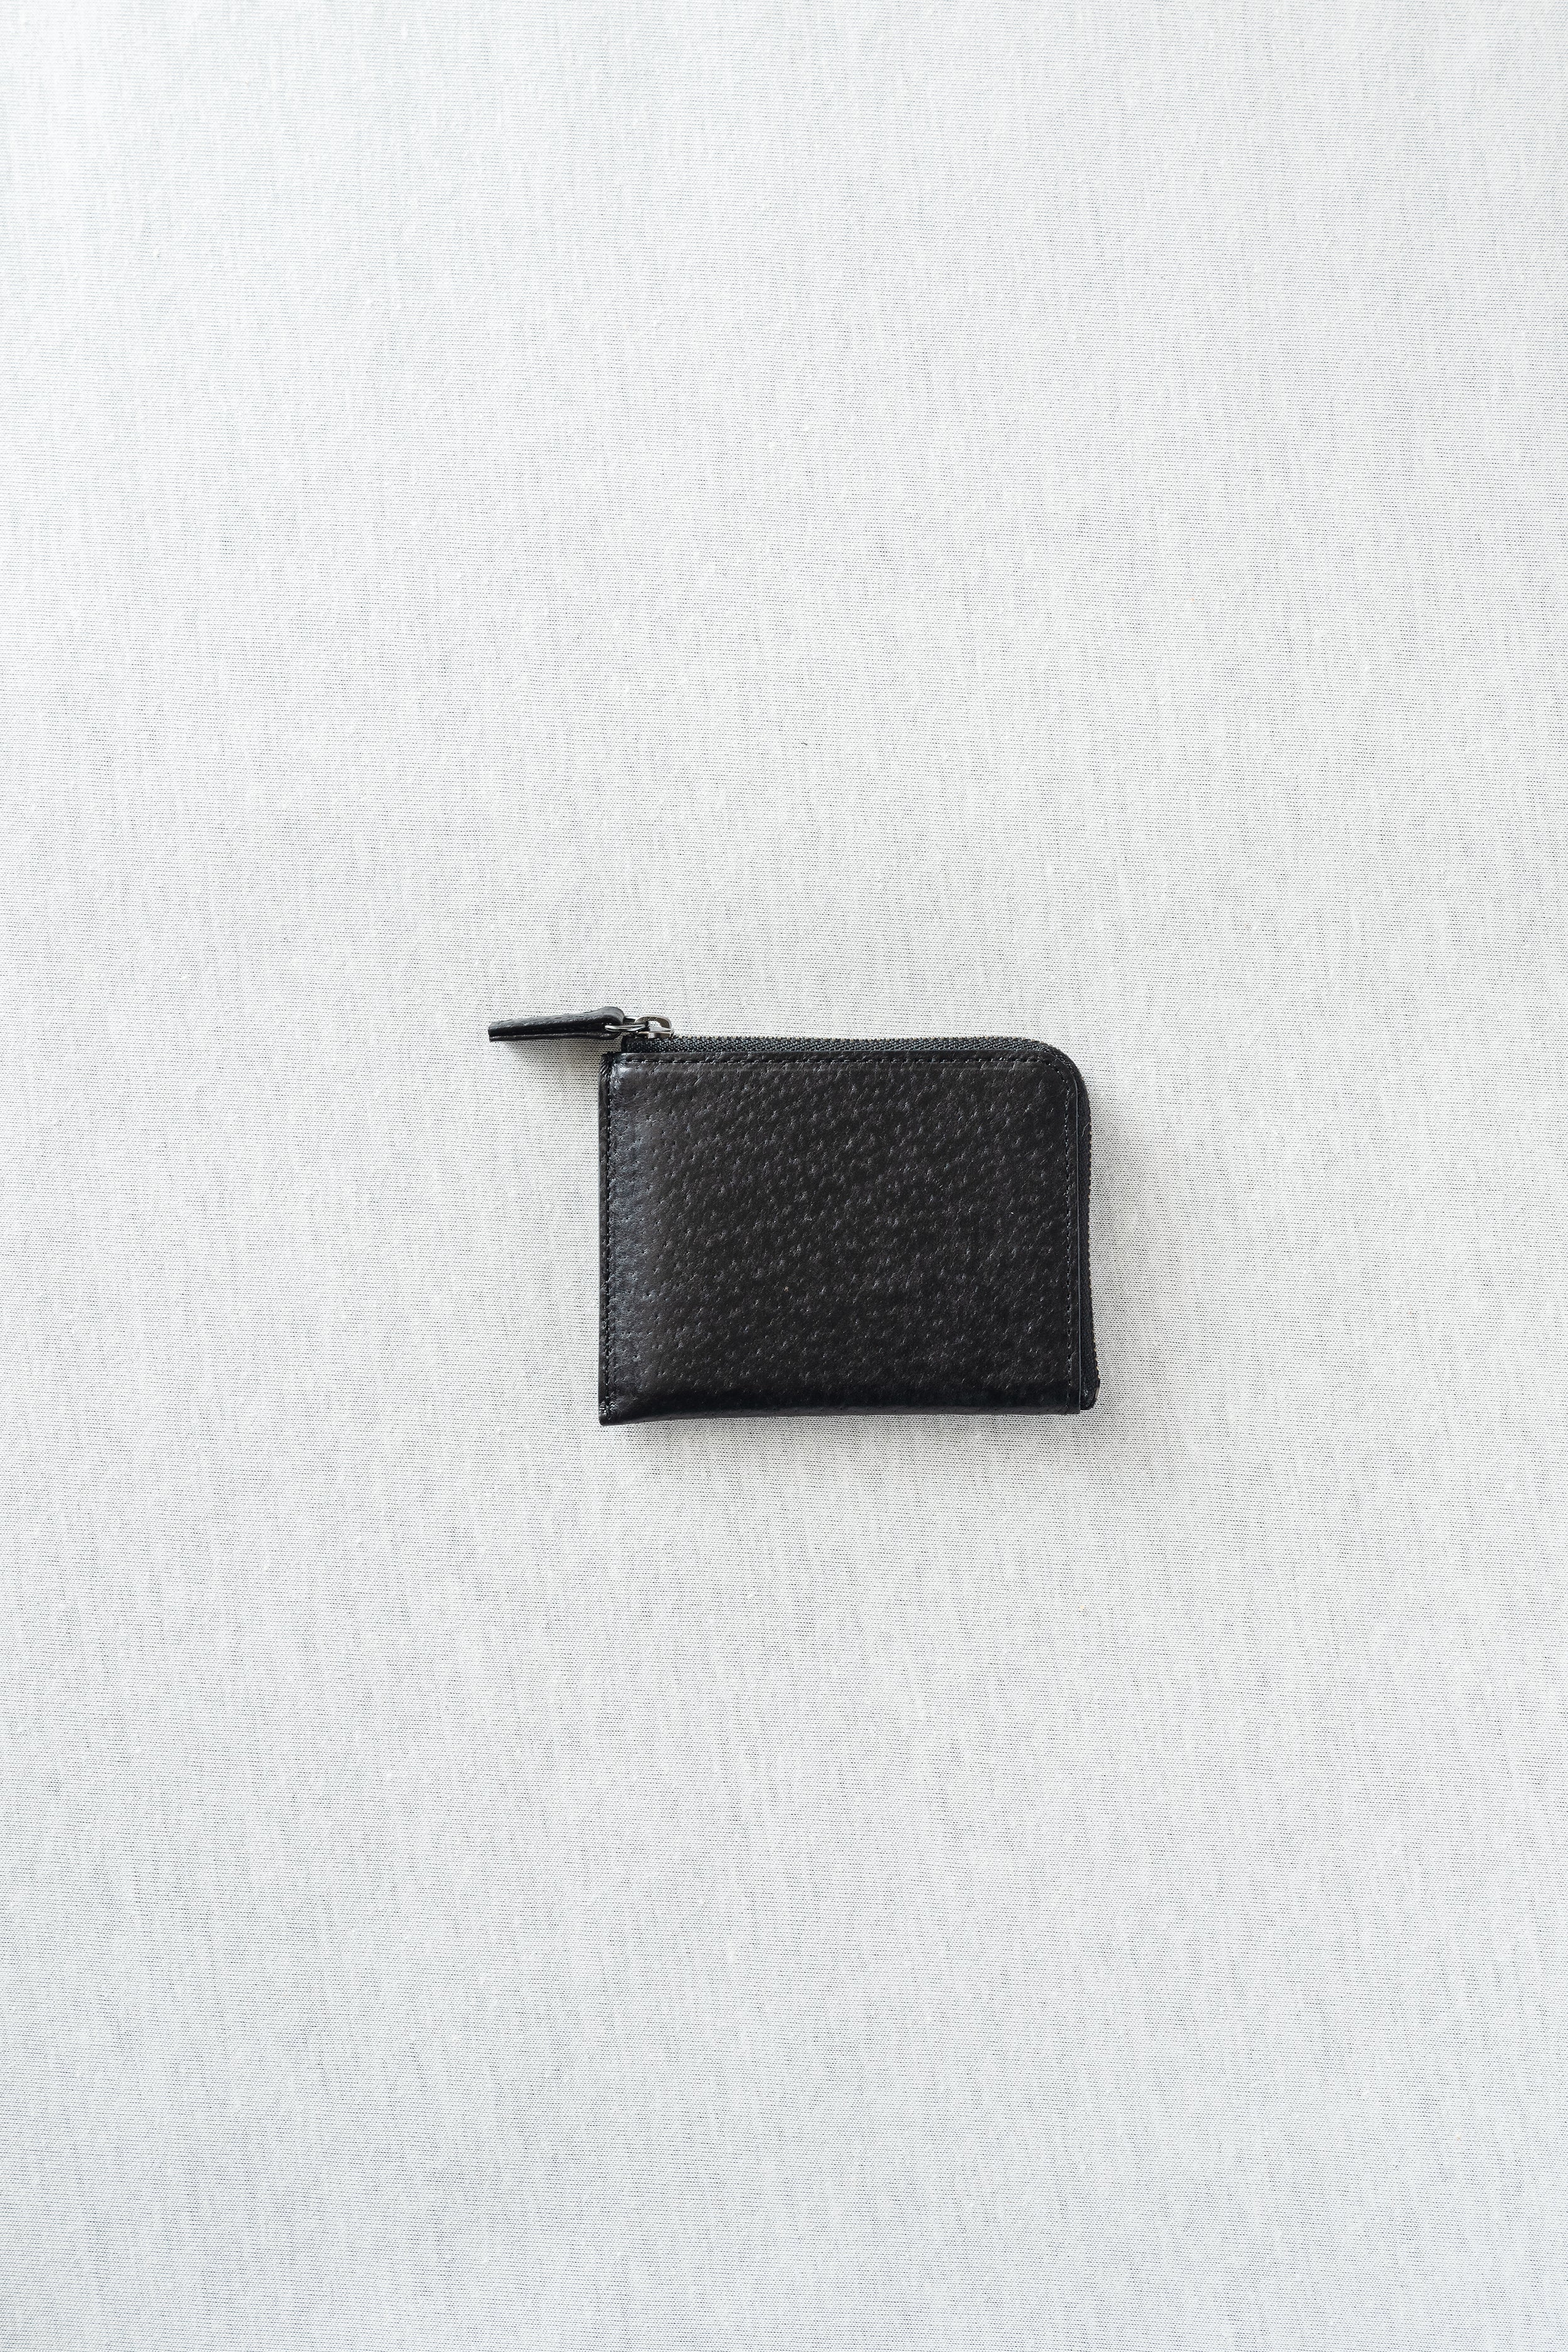 L Zipper mini Wallet  Lファスナーミニ財布